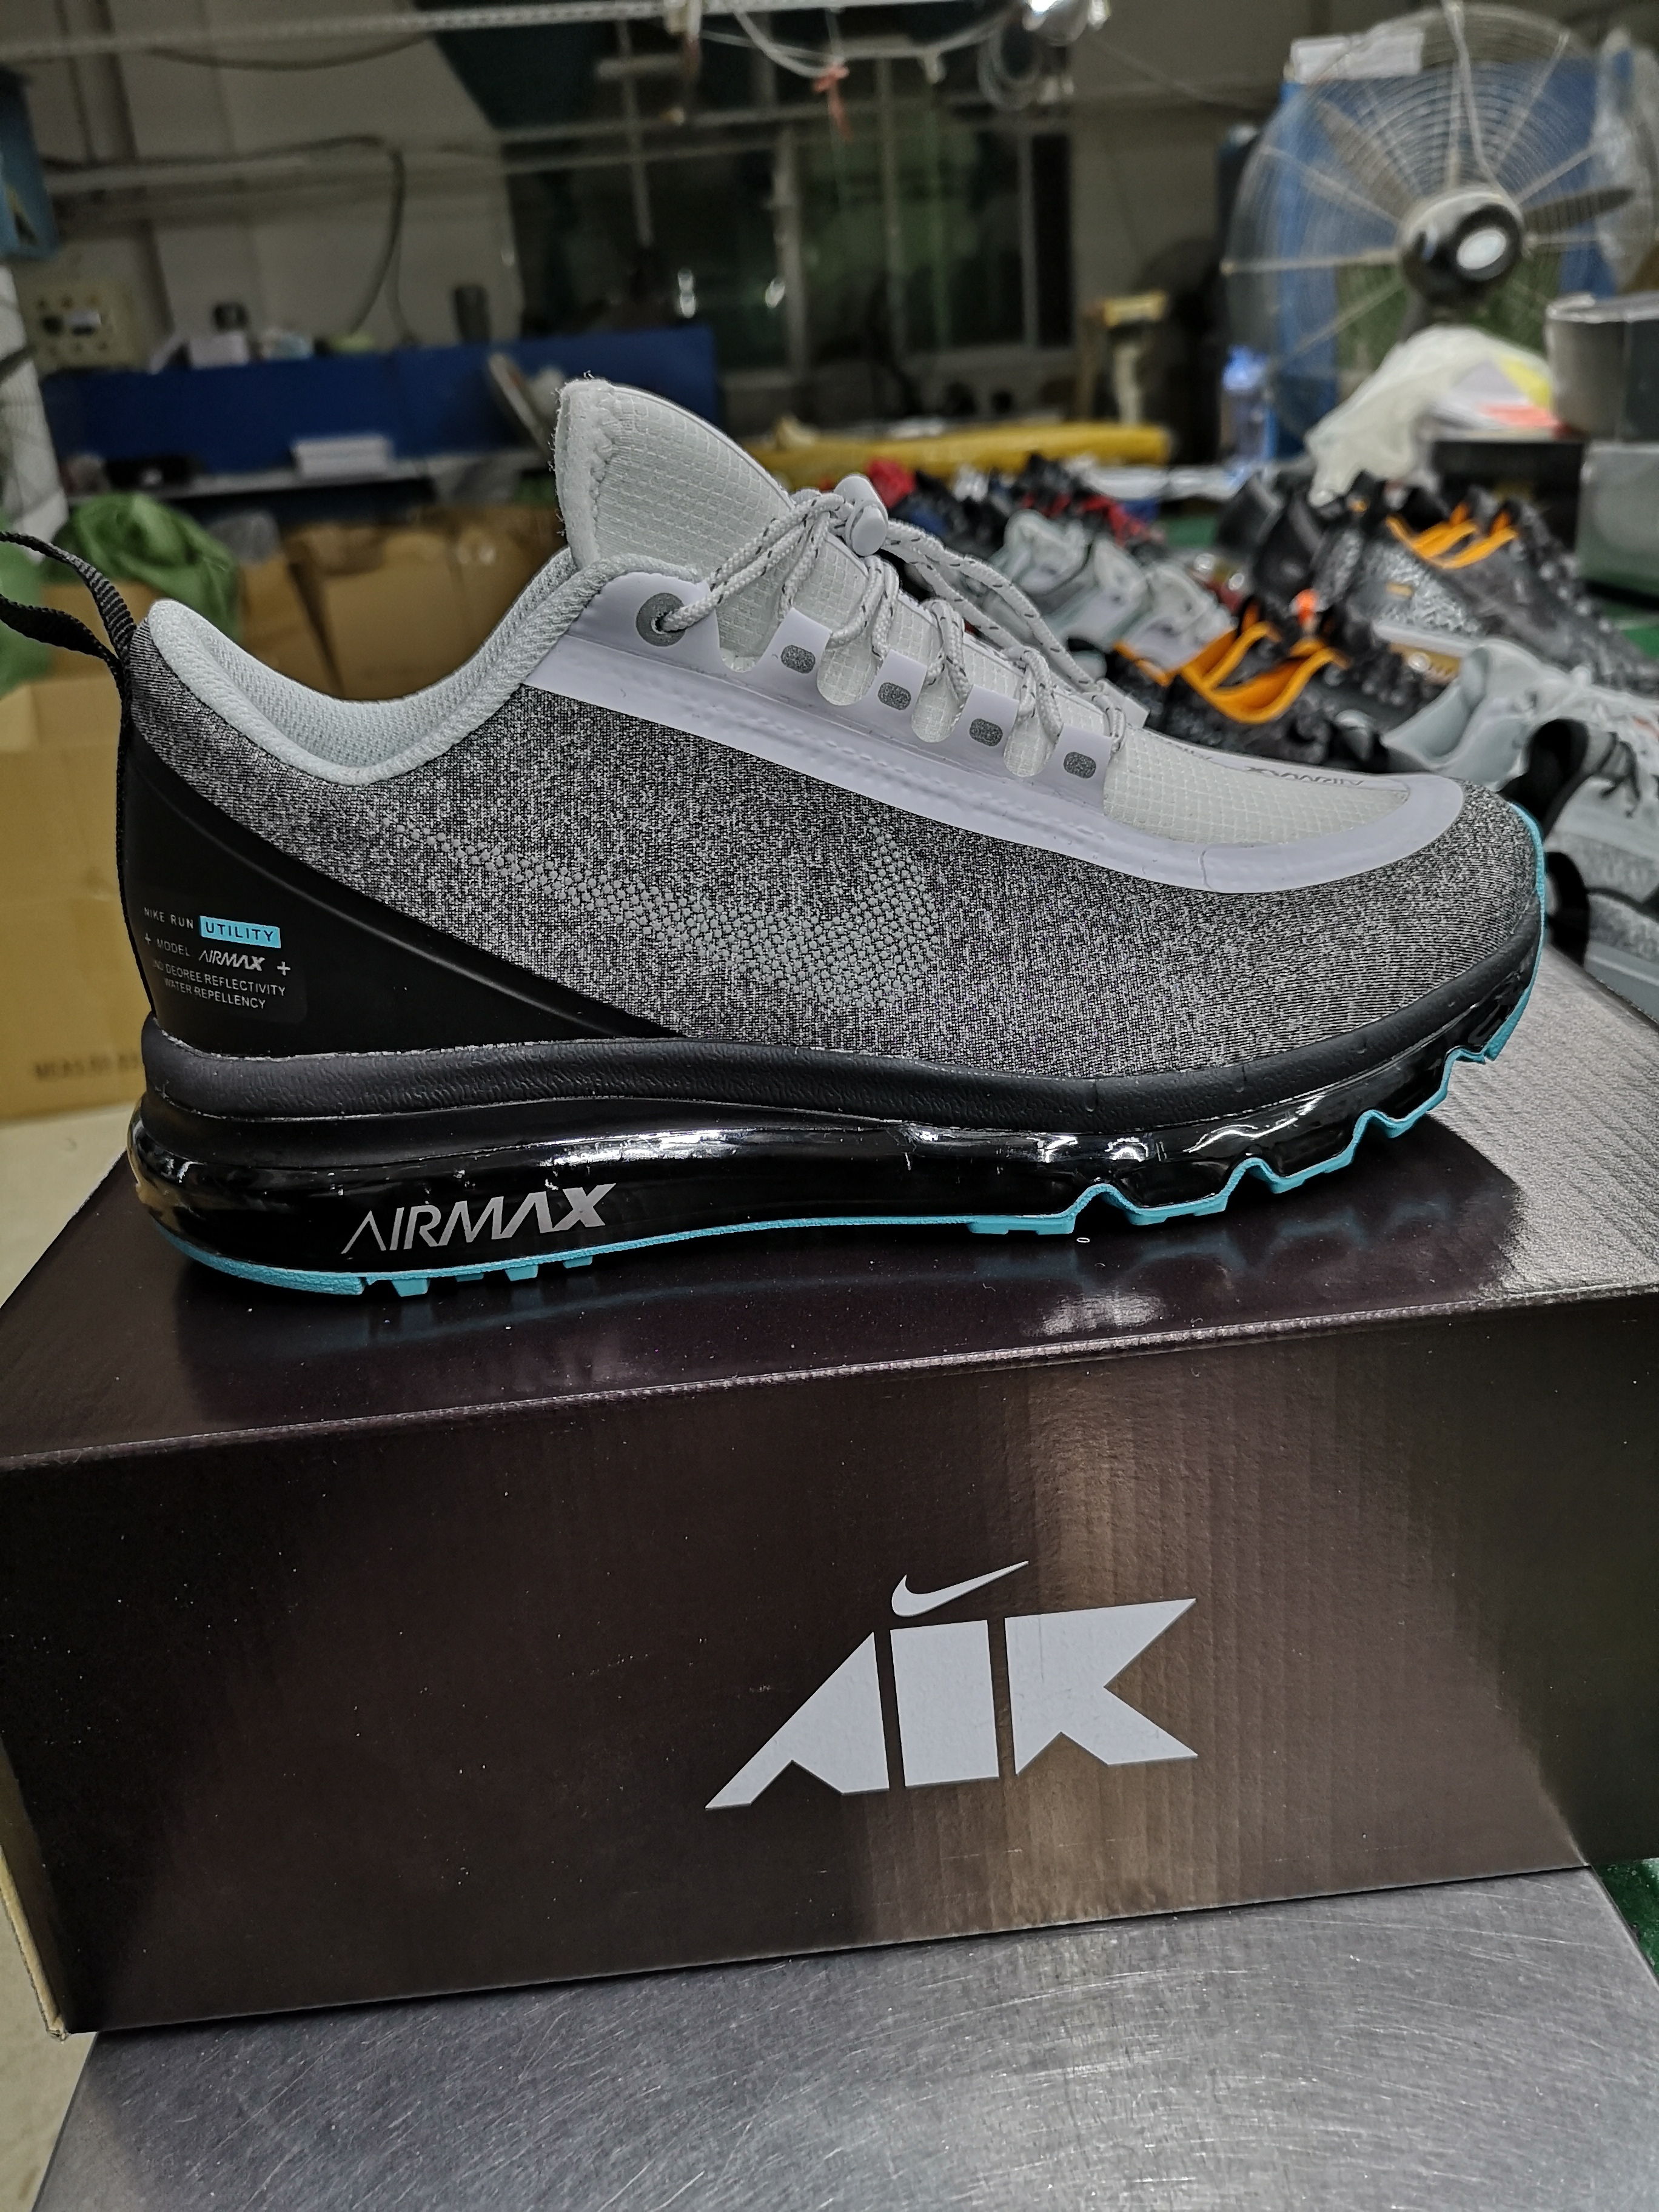 Nike Air Max 2017 Waterproof Grey Black Blue Shoes